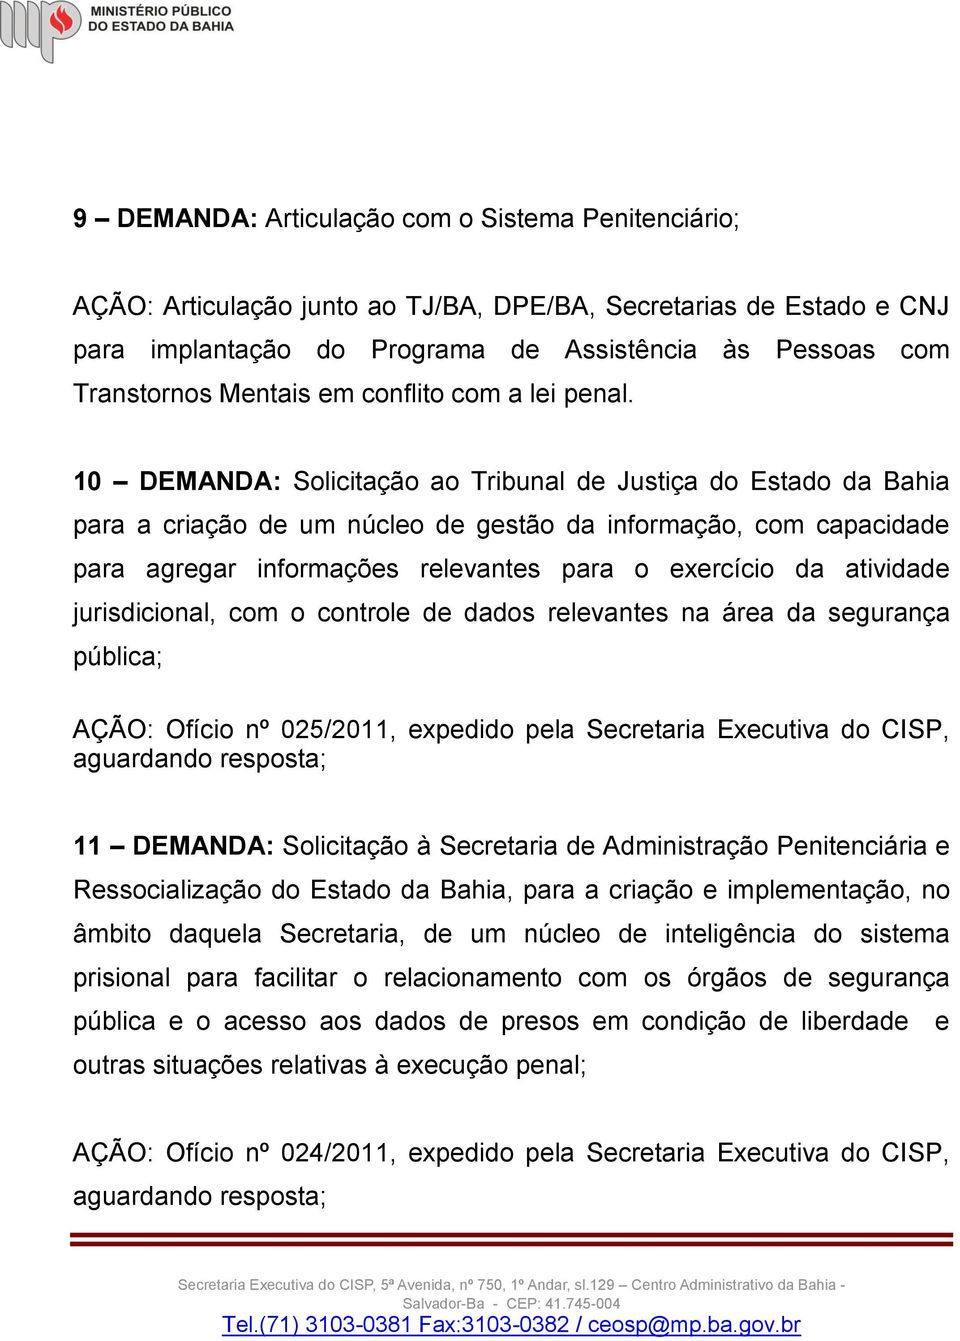 10 DEMANDA: Solicitação ao Tribunal de Justiça do Estado da Bahia para a criação de um núcleo de gestão da informação, com capacidade para agregar informações relevantes para o exercício da atividade